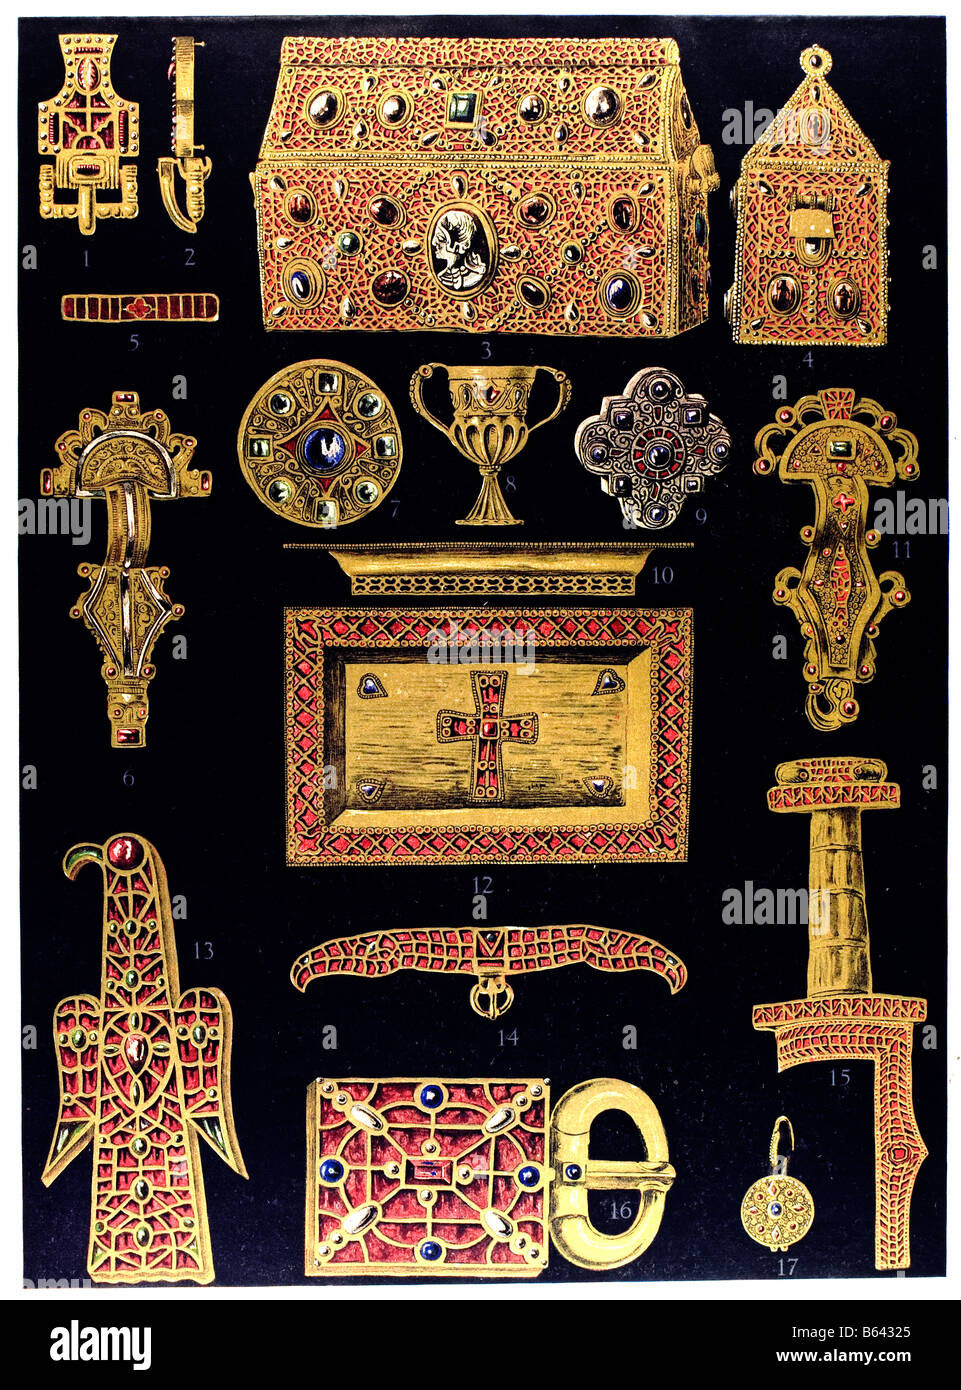 À la fin de l'Ornement germanique période classique, d'art et d'artisanat d'or mérovingien. Banque D'Images